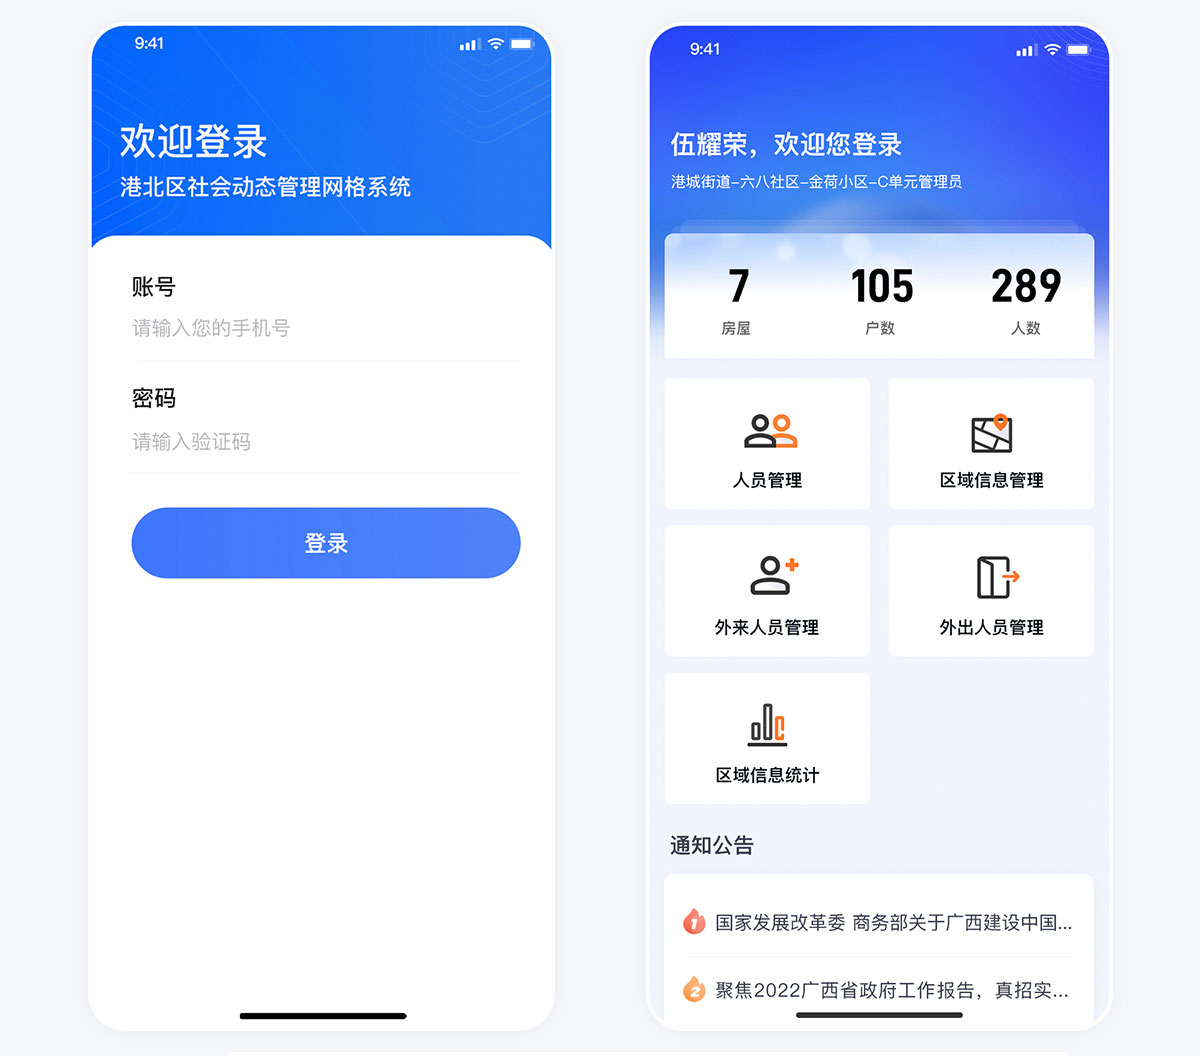 贵港港北区社区网格管理平台手机app登录页面